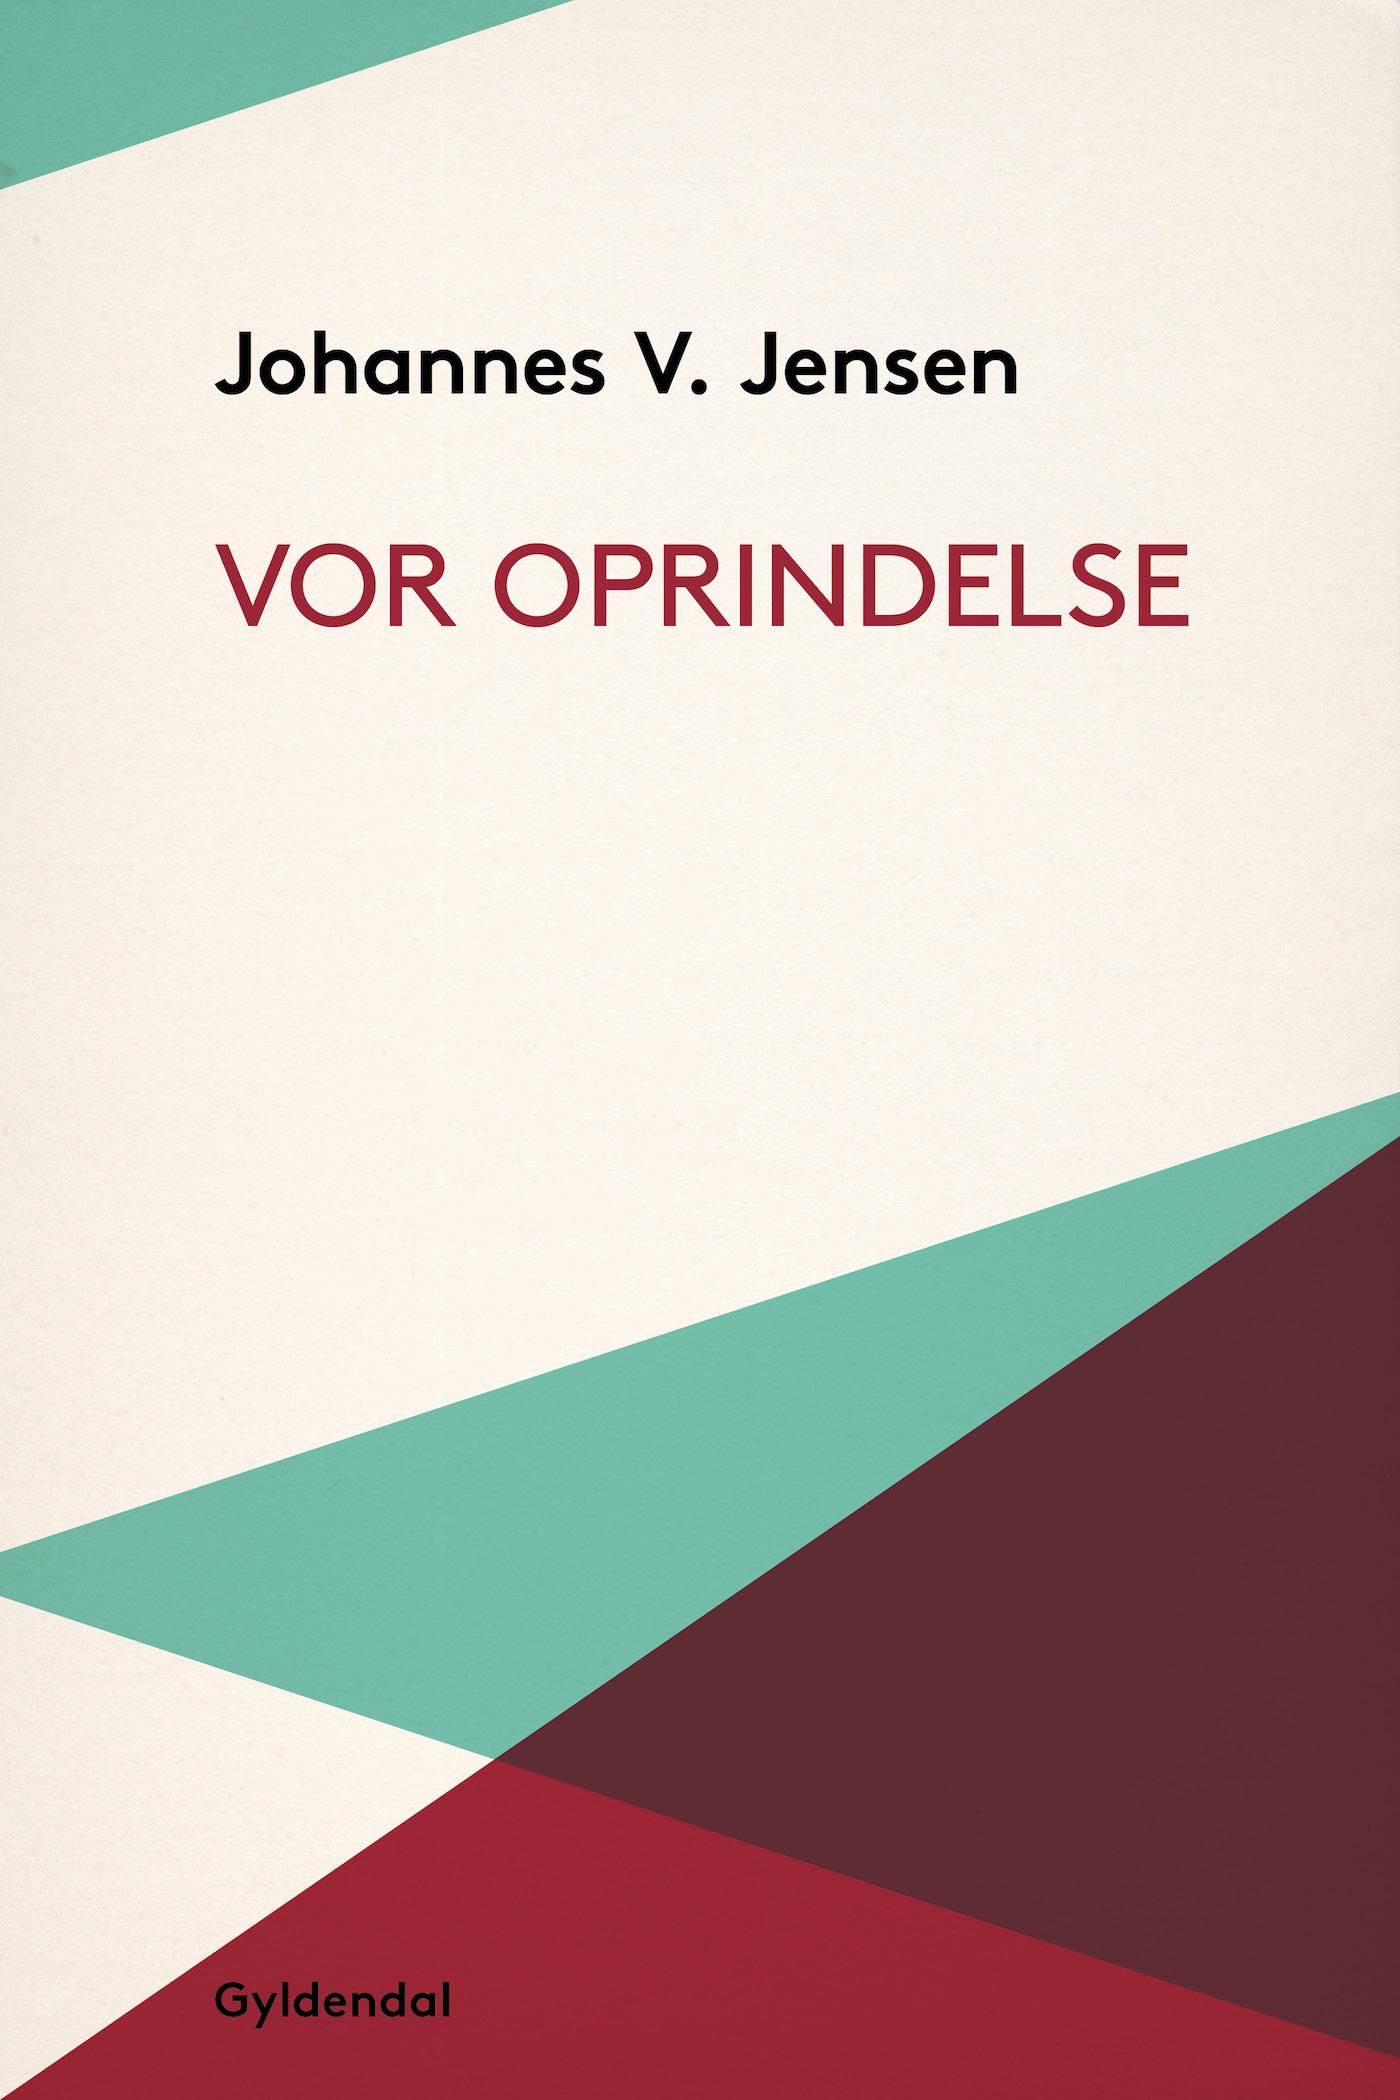 Vor Oprindelse, eBook by Johannes V. Jensen